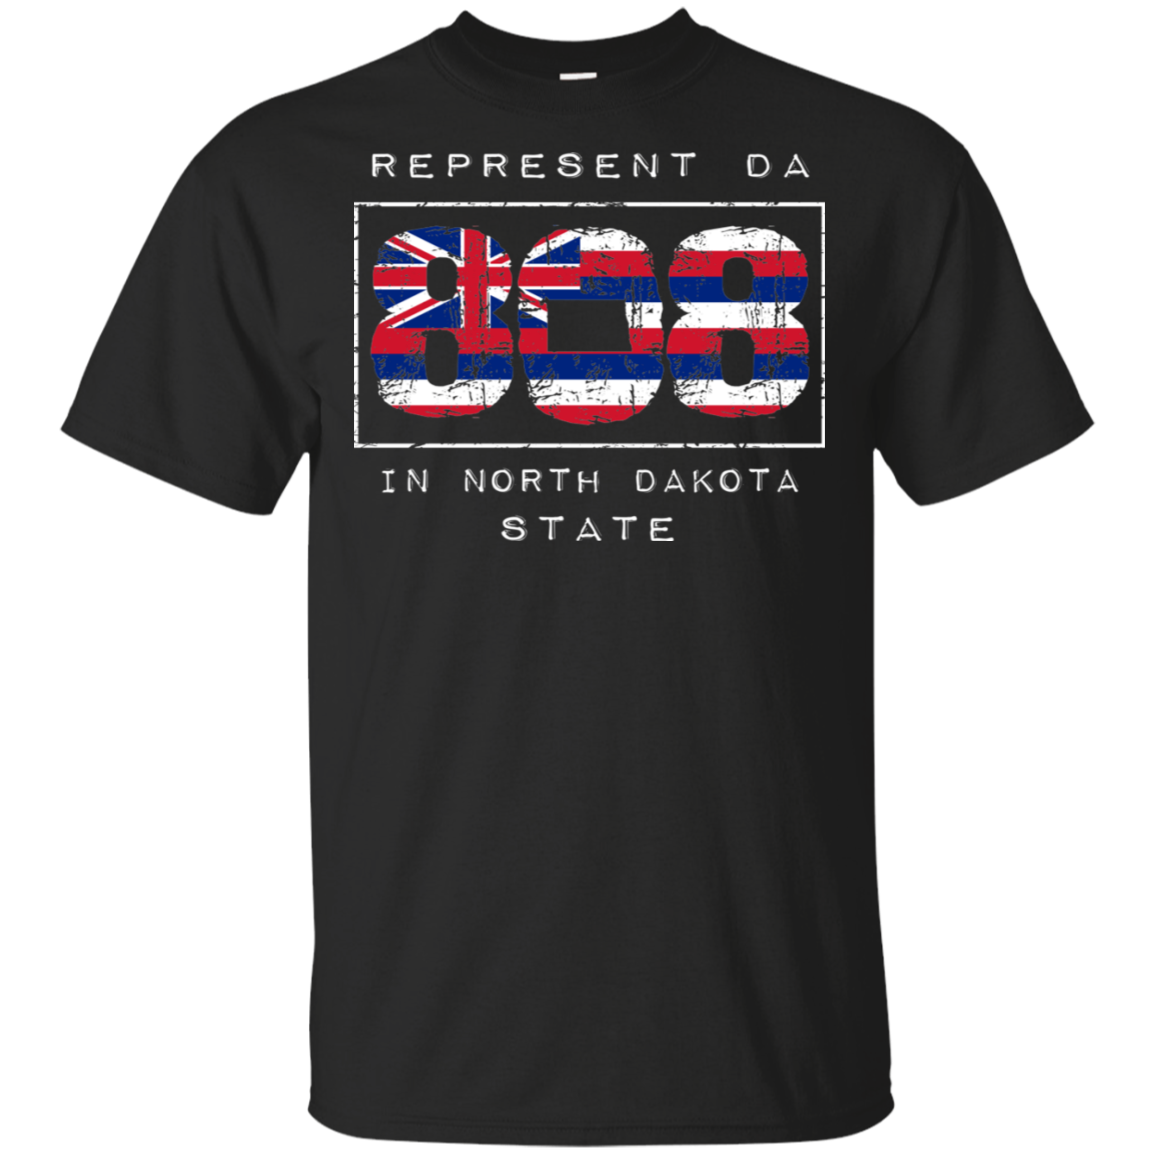 Rep Da 808 In North Dakota State Ultra Cotton T-Shirt, T-Shirts, Hawaii Nei All Day